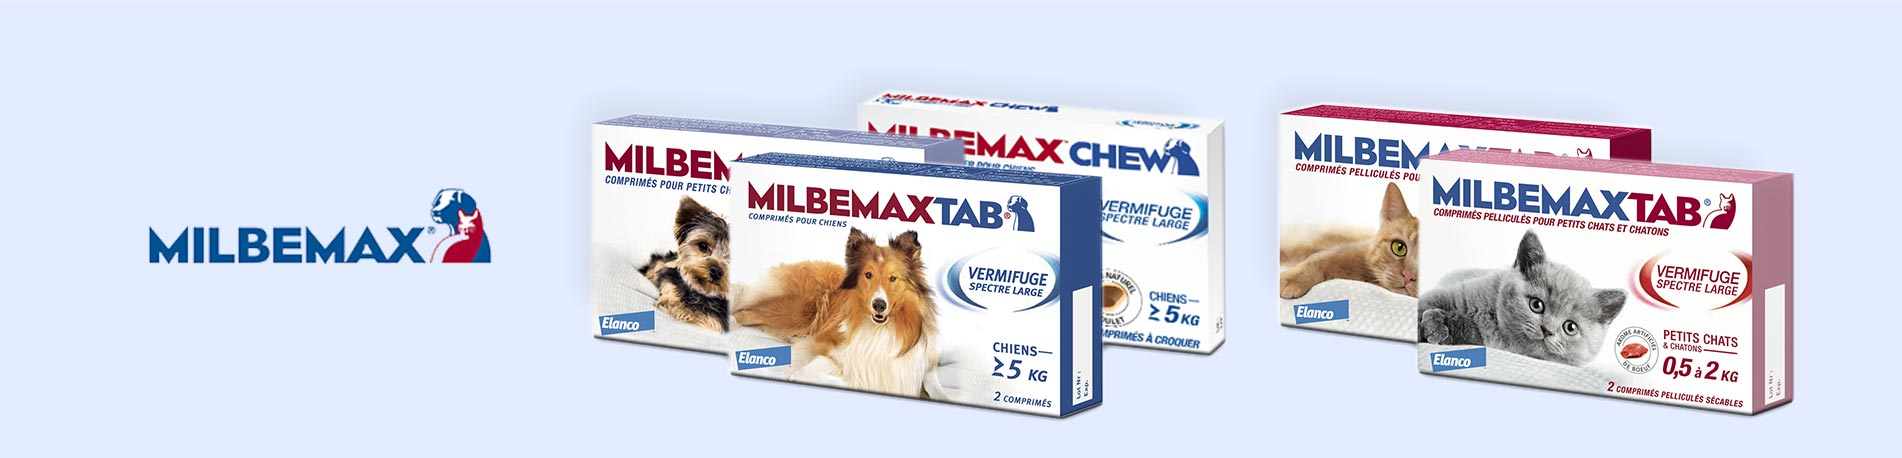 Milbemax Chew Chien de 5 kg et plus - Vermifuge vers plats et ronds